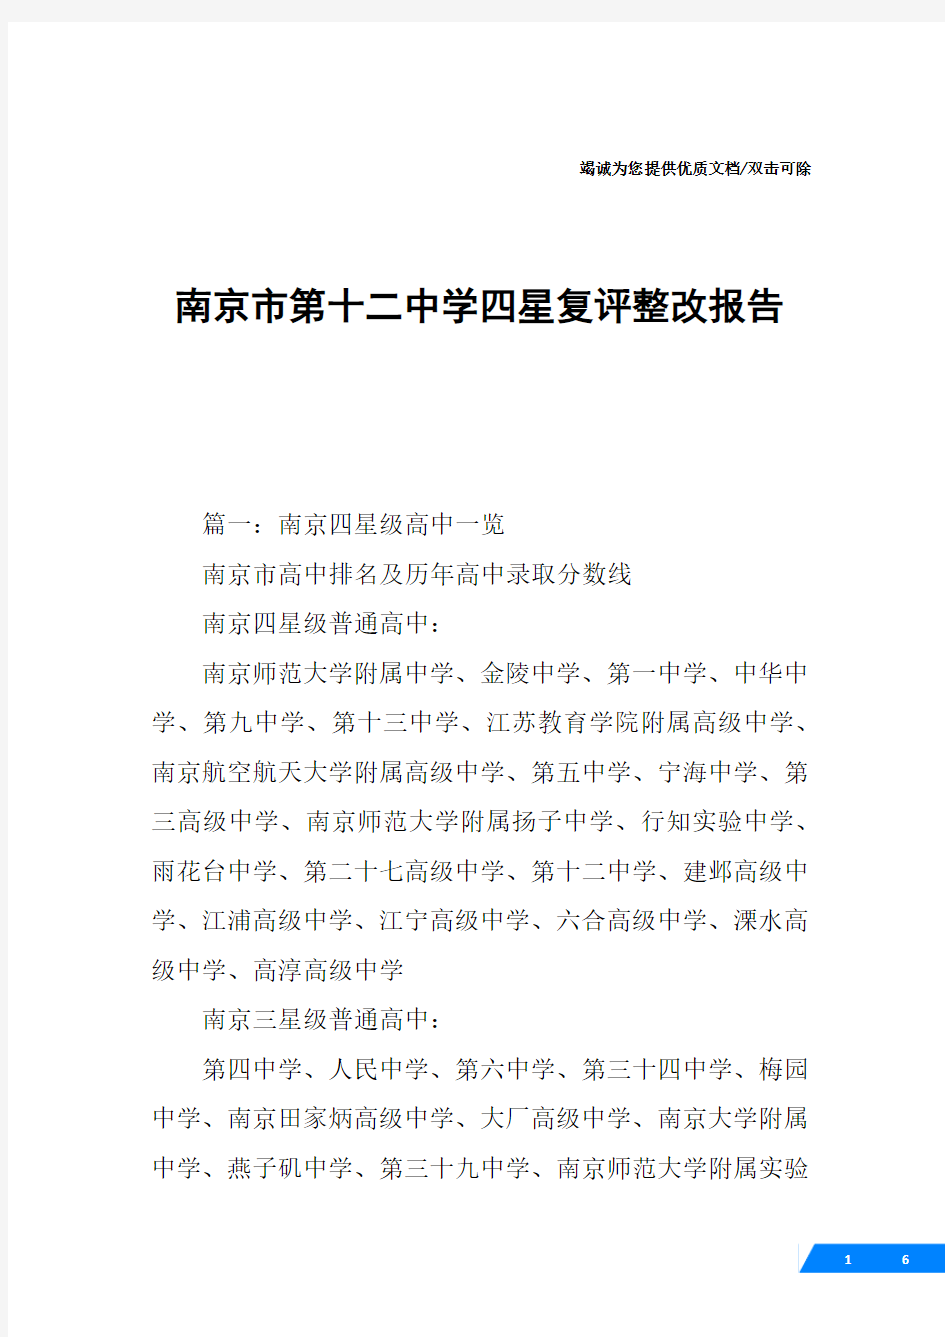 南京市第十二中学四星复评整改报告